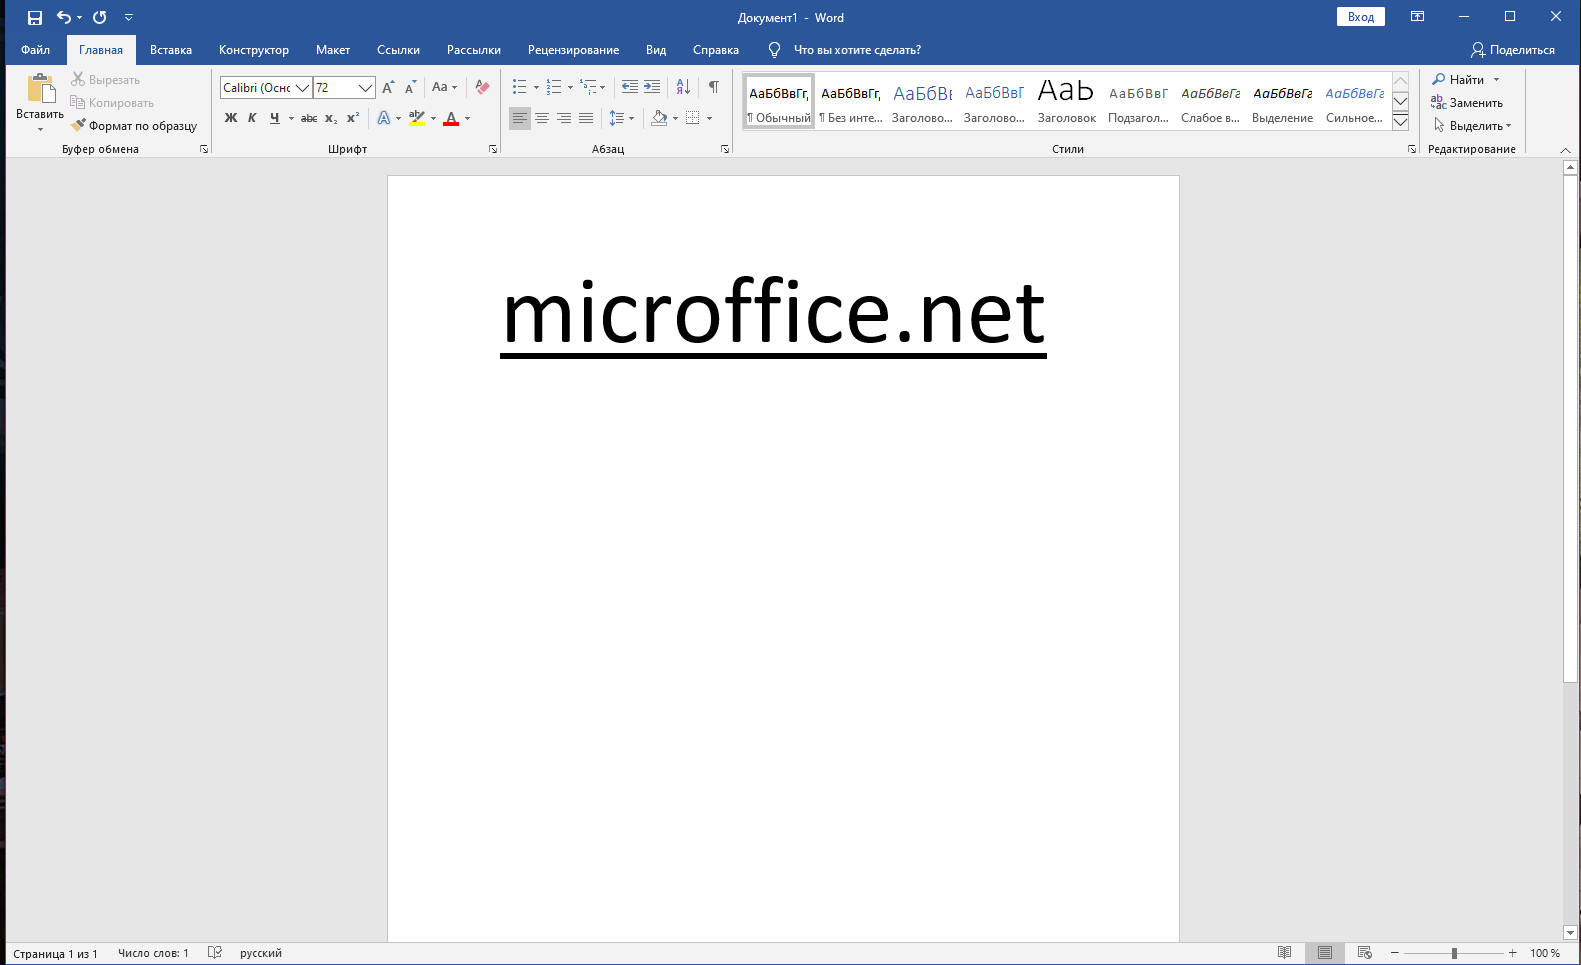 Новая версия word. MS Word Интерфейс 2019. Майкрософт офис ворд 2019. Microsoft Office Word 2019 Интерфейс. Microsoft Office 2019 ворд.